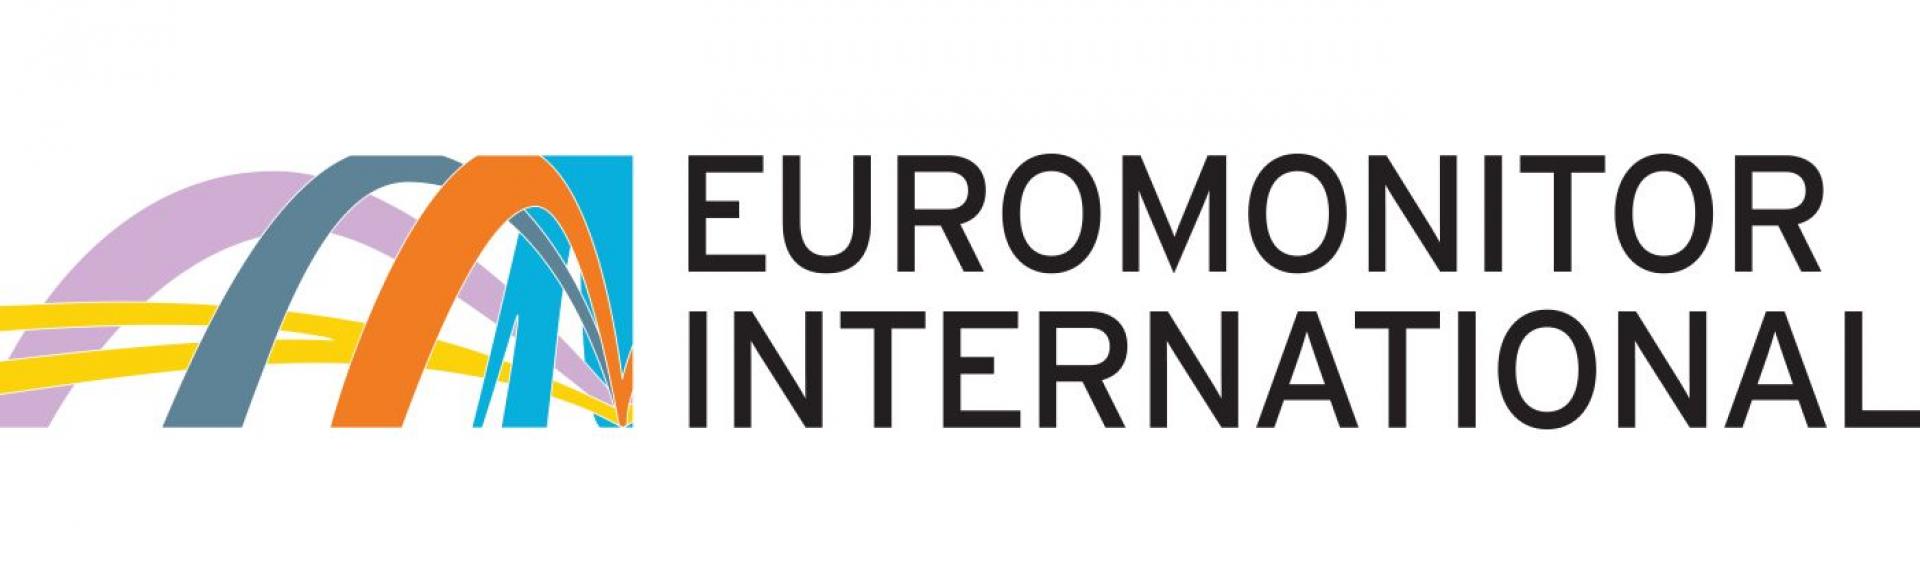 Euromonitor International zaprasza czołowe polskie firmy na bezpłatne seminarium w Warszawie